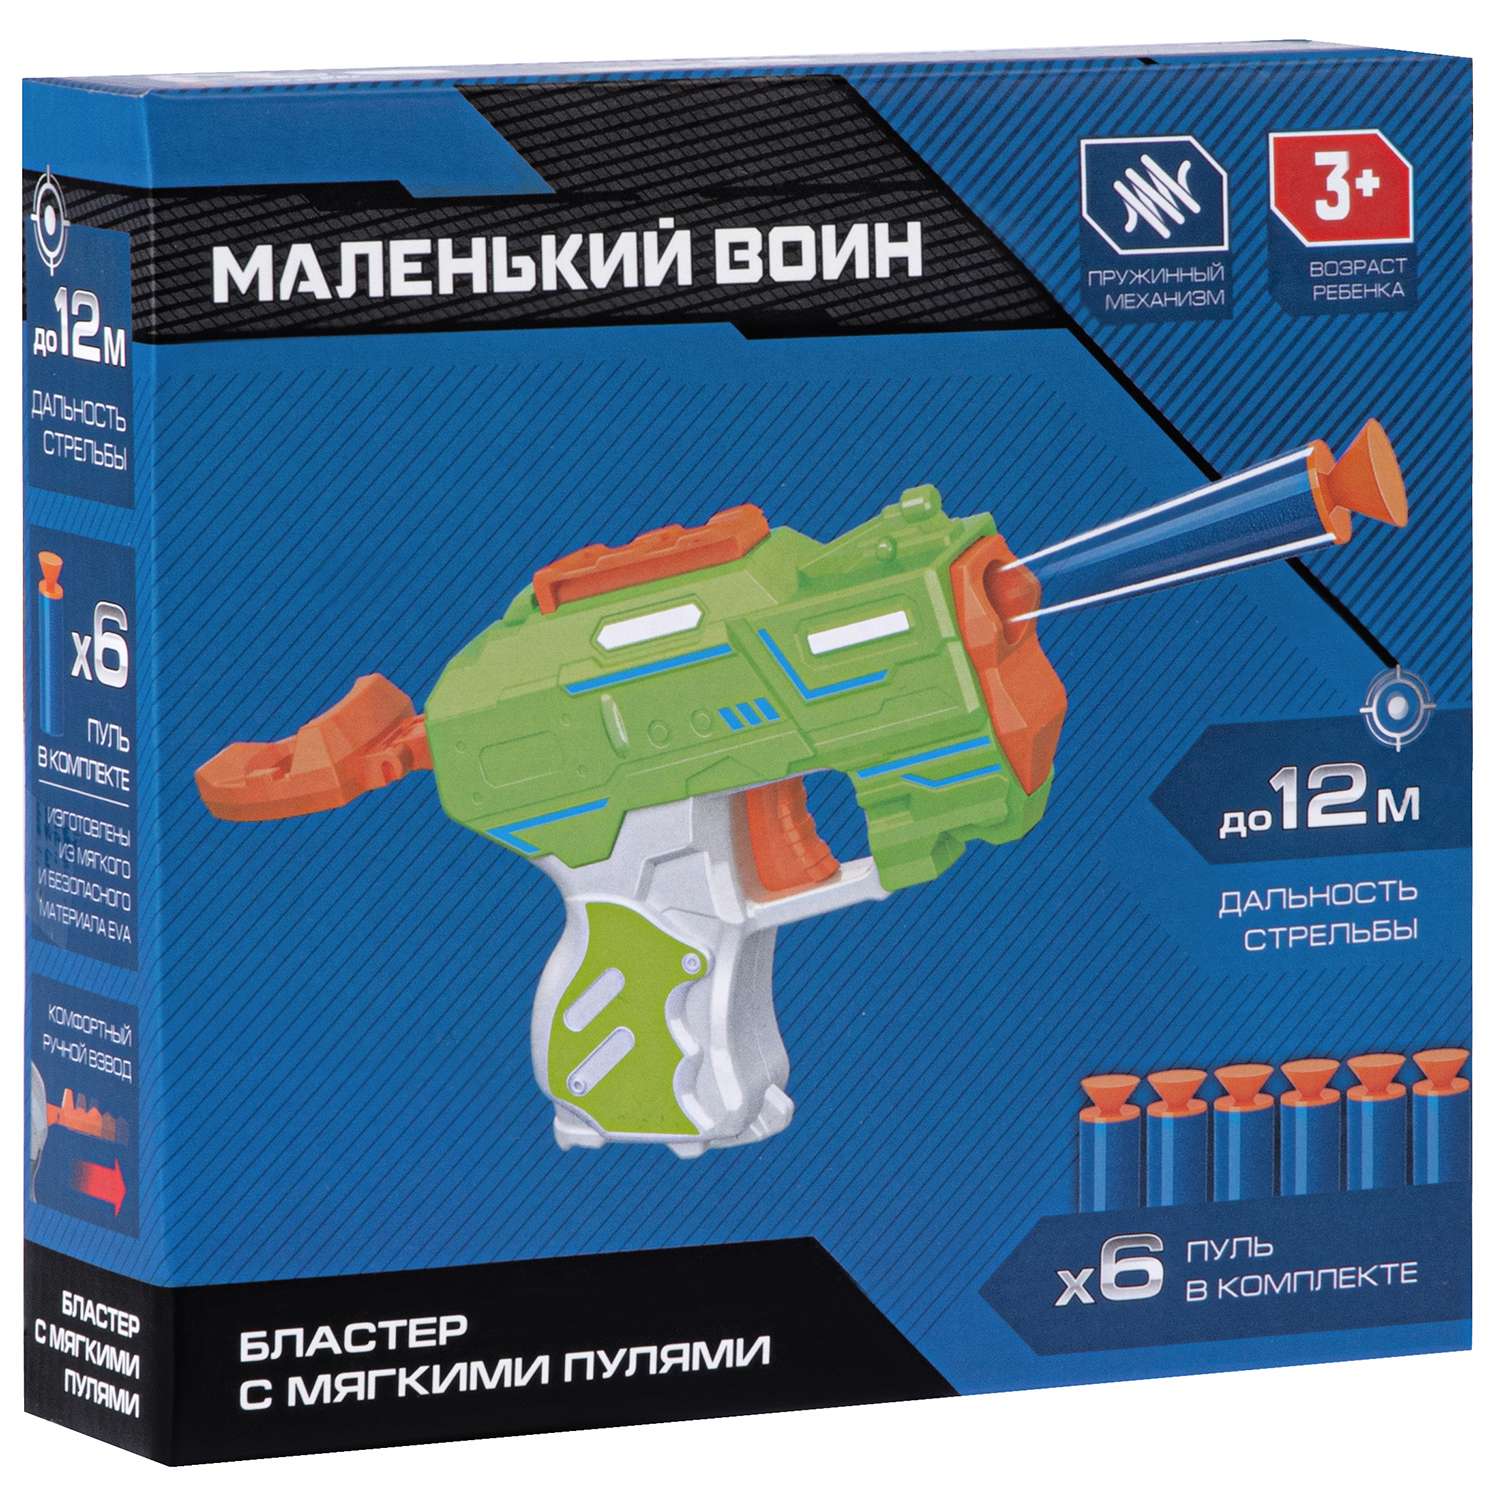 Игрушечное оружие Маленький Воин Бластер с мягкими пулями ручной затвор JB0211465 - фото 8